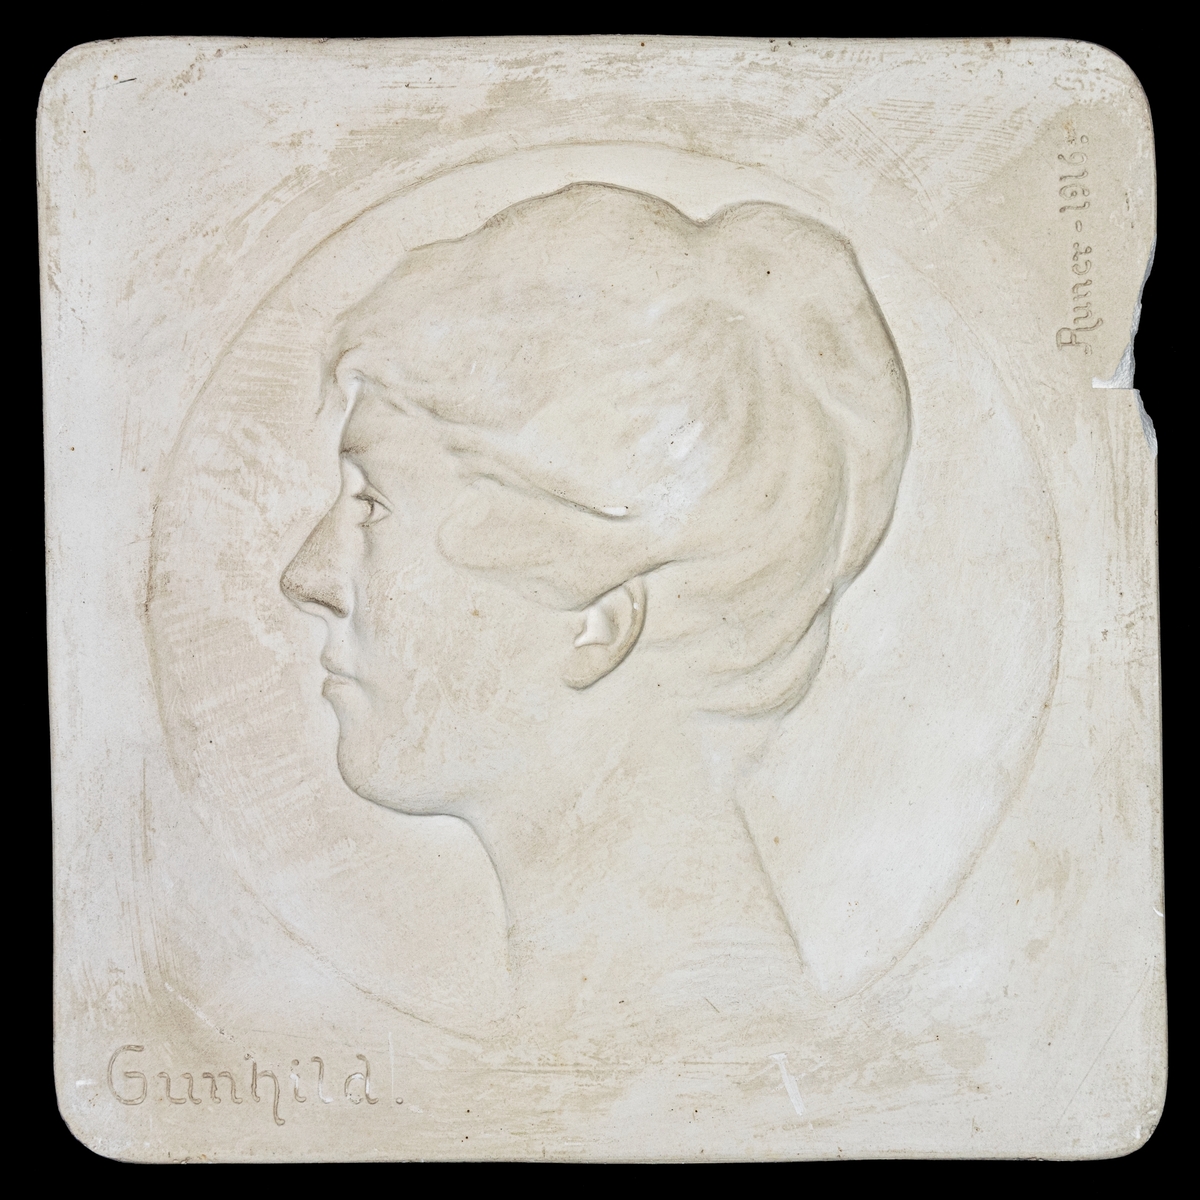 Porträttrelief föreställande Gunhild Toll f. Engwall.
Sign. John Runer 1916